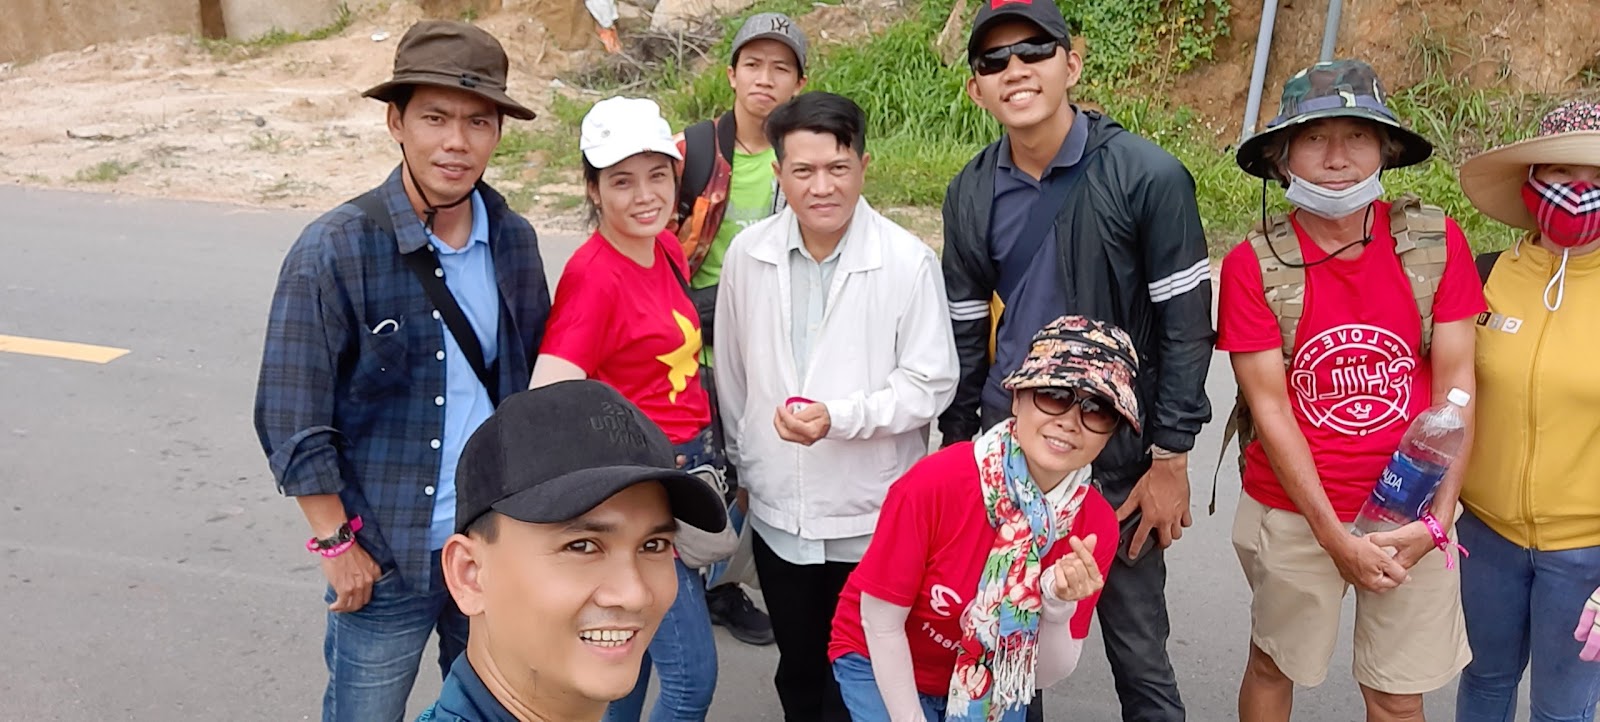 Team Prosumer chinh phục đỉnh núi Chứa Chan - Gia Lào